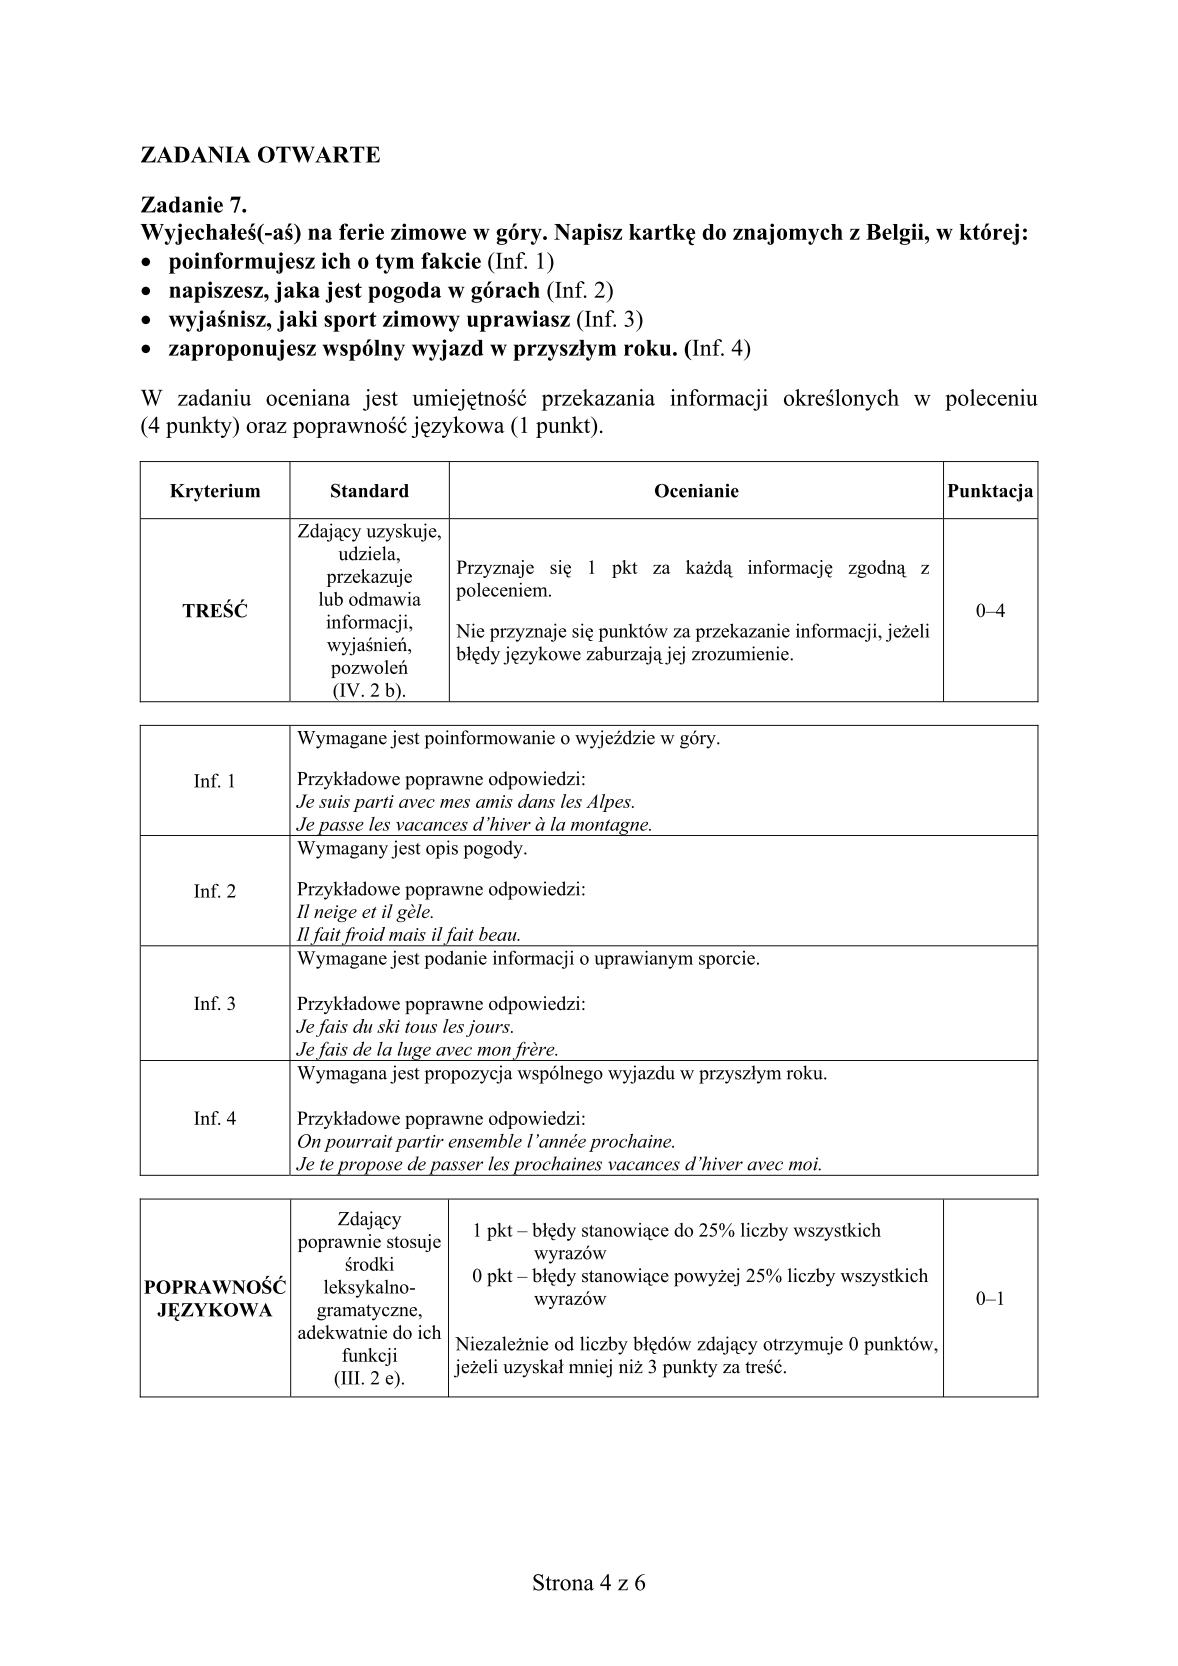 odpowiedzi-francuski-poziom-podstawowy-matura-2014-str.4